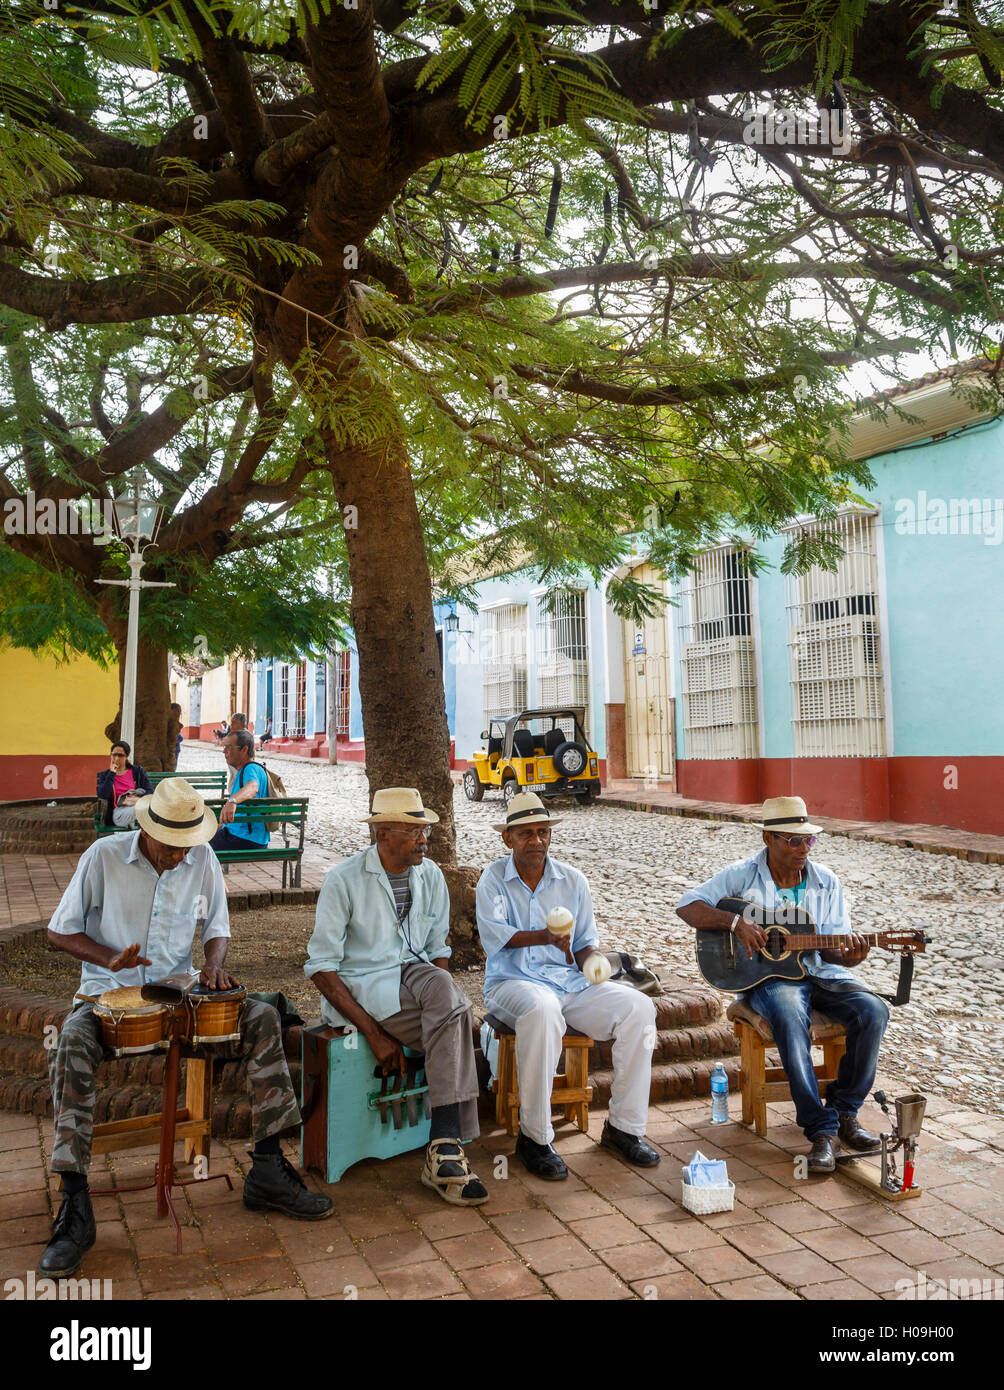 Groupe jouant de la musique sur une place de la Trinité, la province de Sancti Spiritus, Cuba, Antilles, Caraïbes, Amérique Centrale Banque D'Images